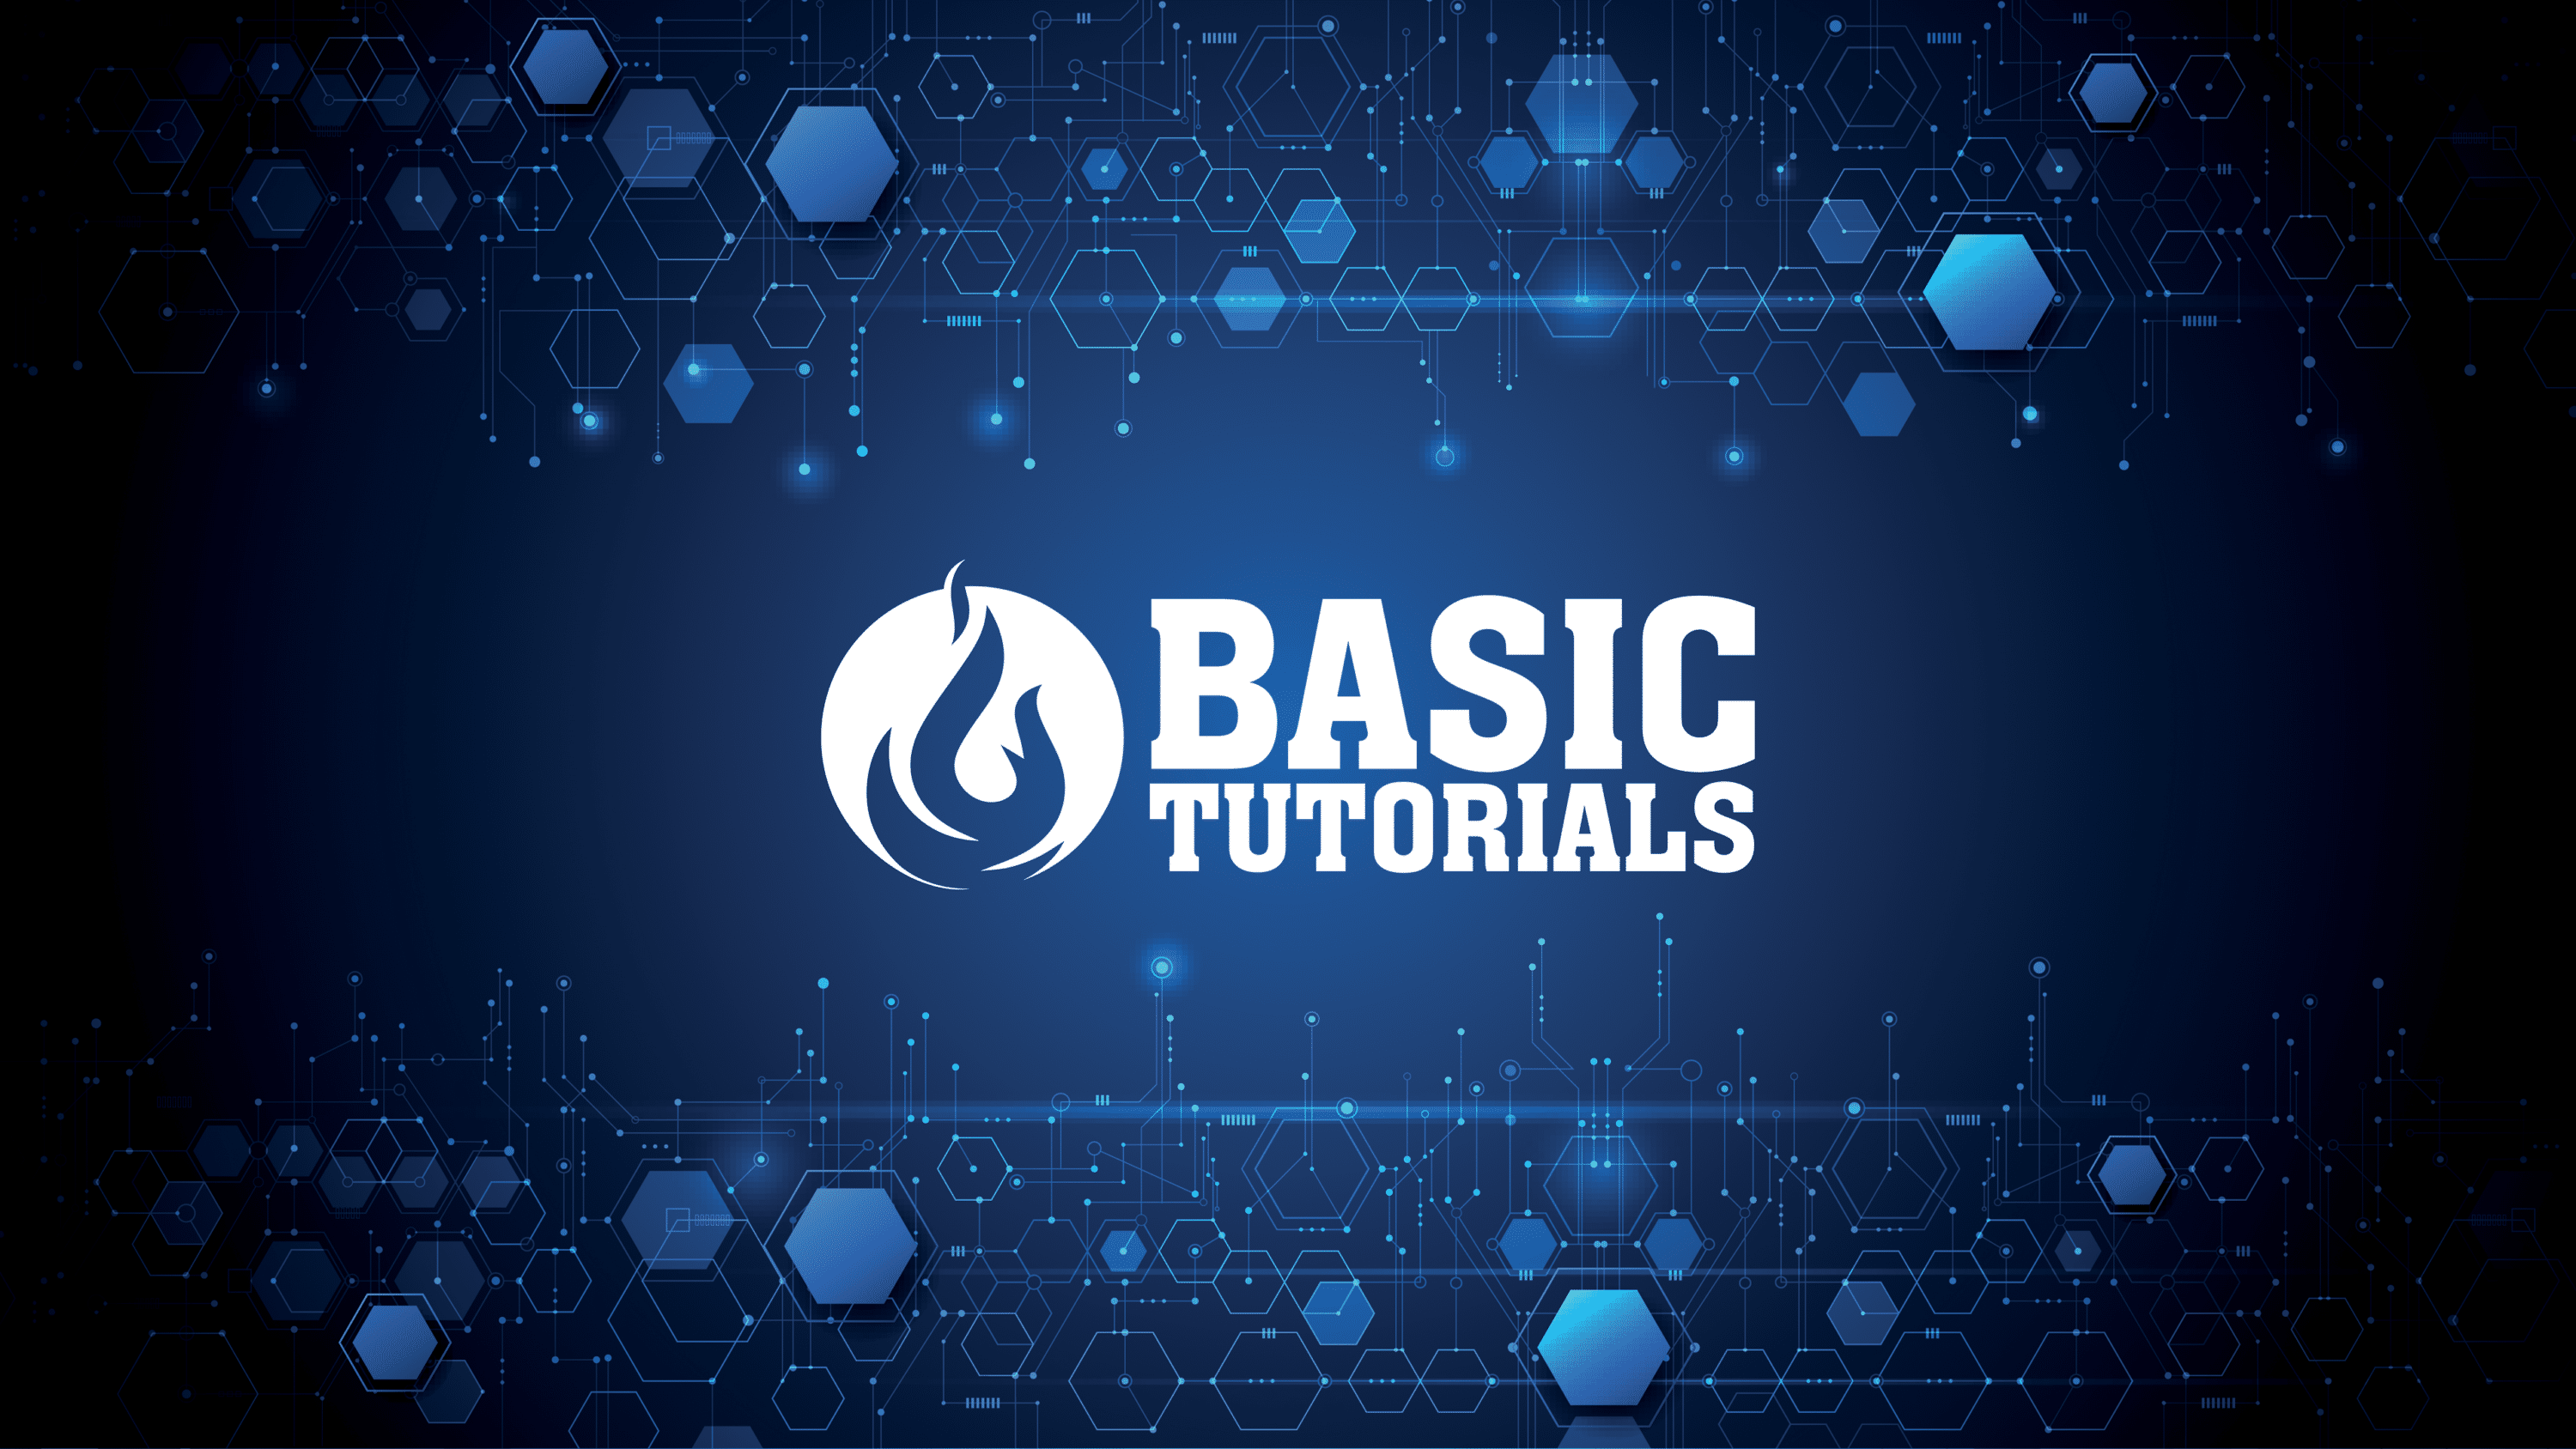 (c) Basic-tutorials.de